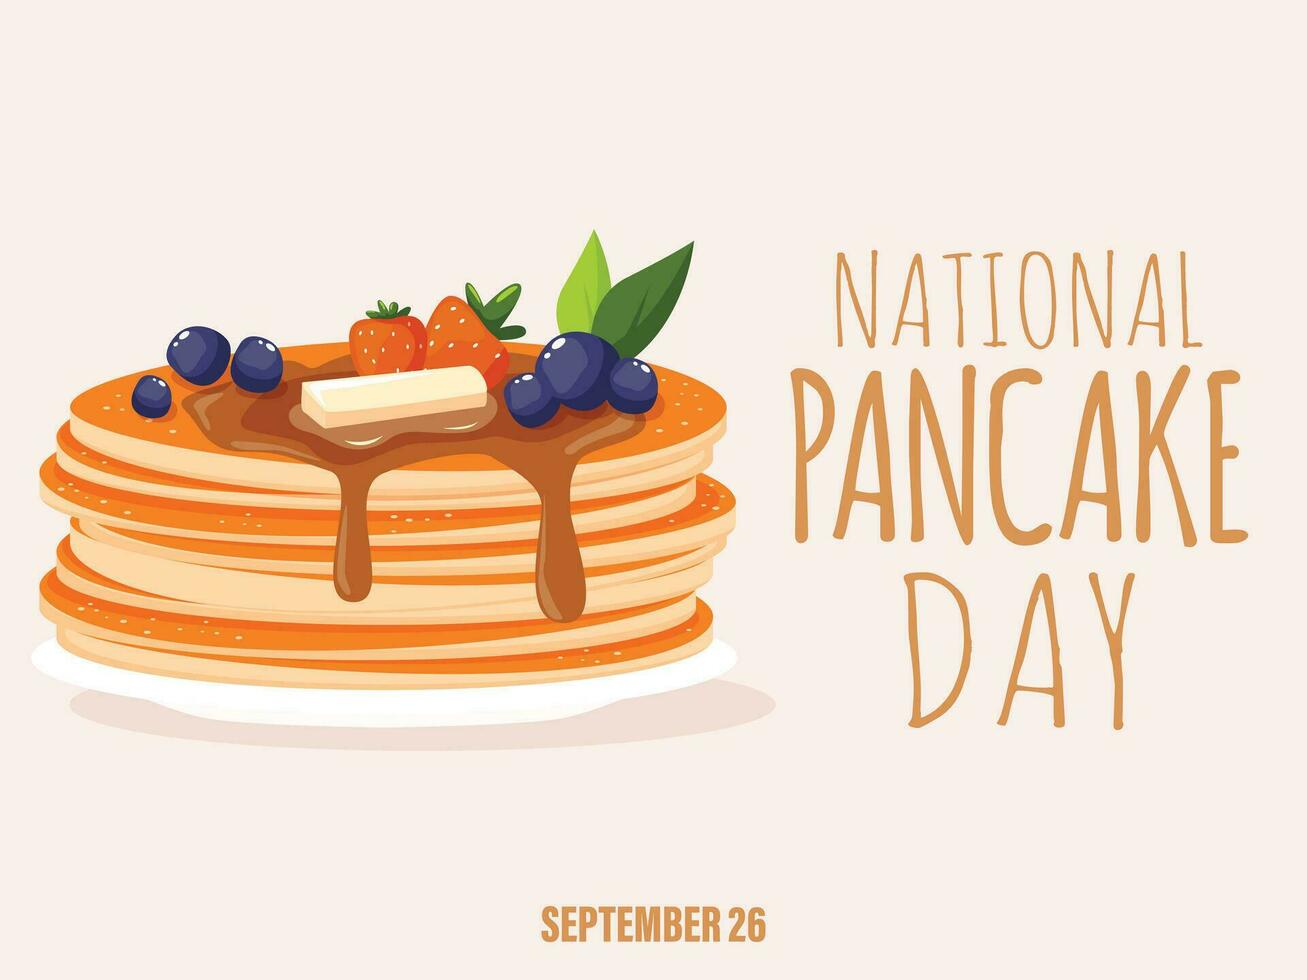 nationell pannkaka dag illustration. pannkakor med sirap och hallon illustration. vektor